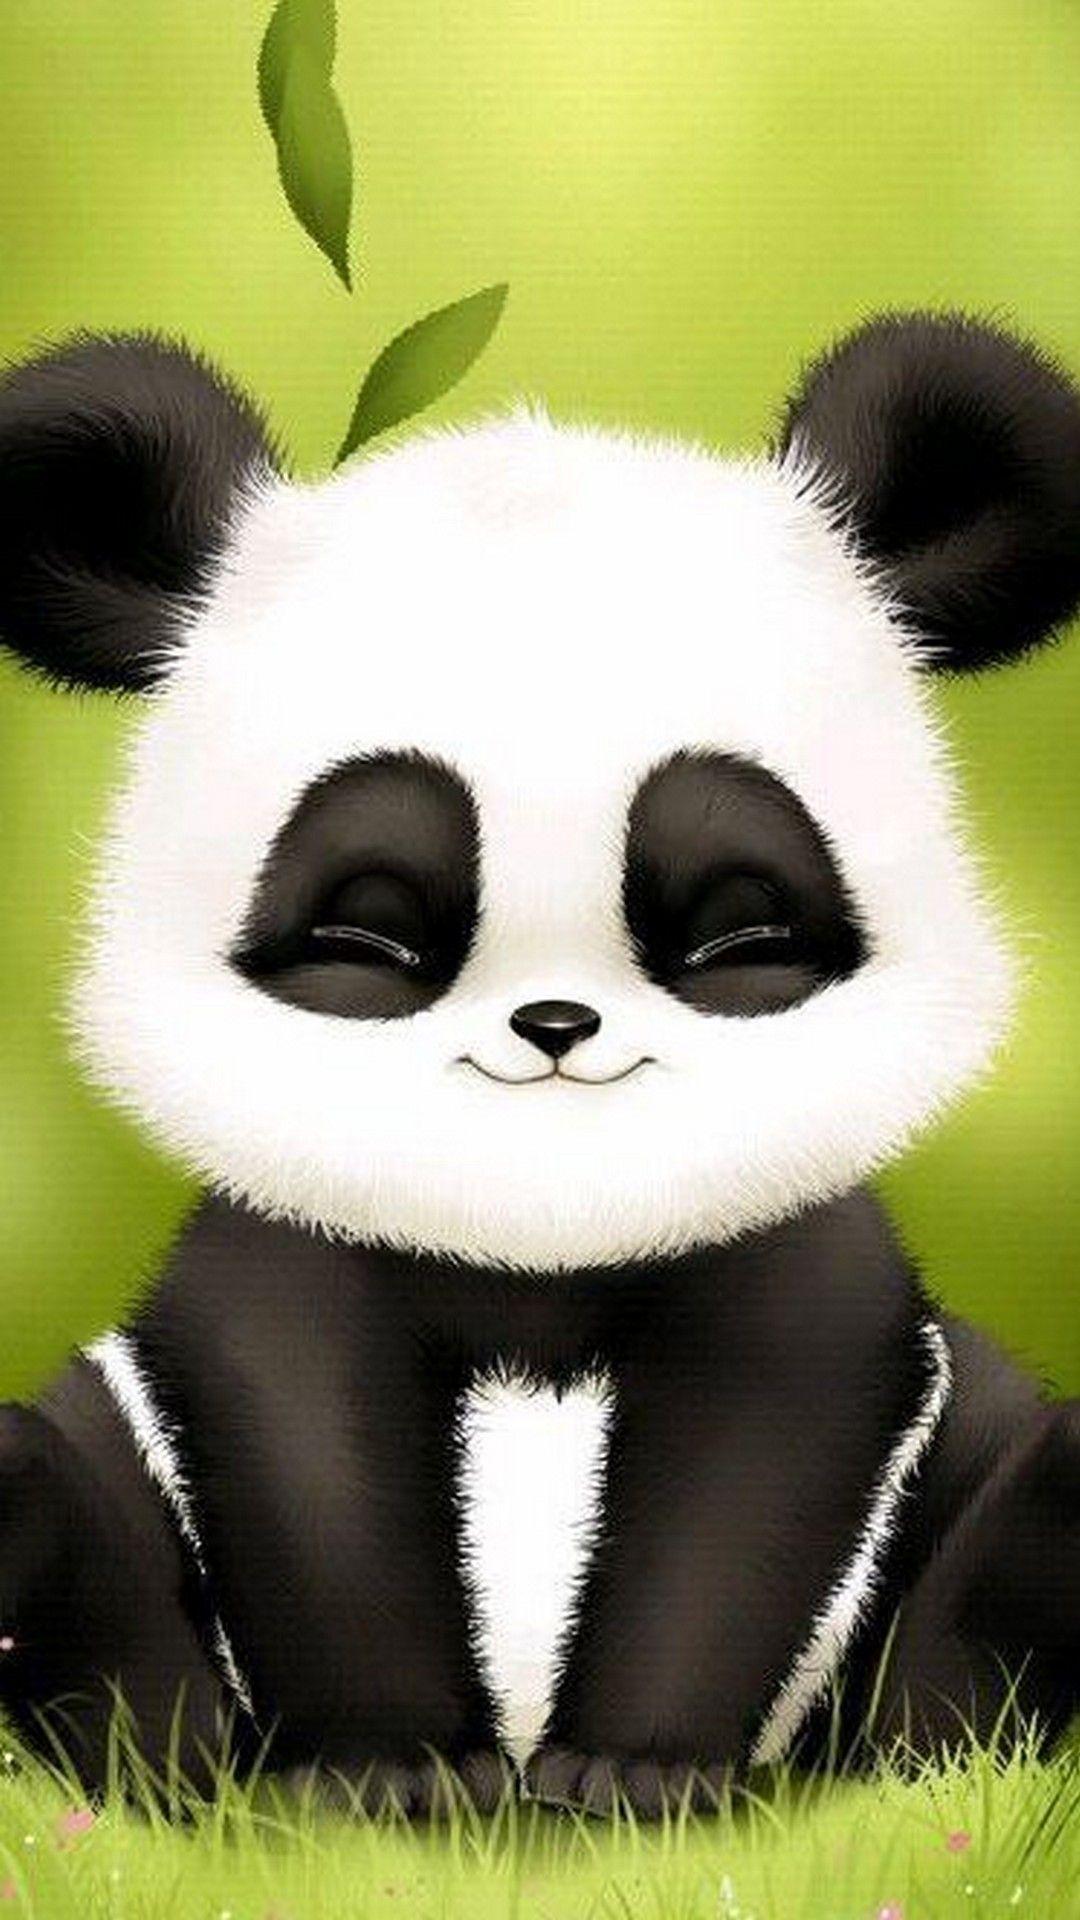 Cute Panda Wallpaper For Phone. Best HD Wallpaper. Wallpapercute